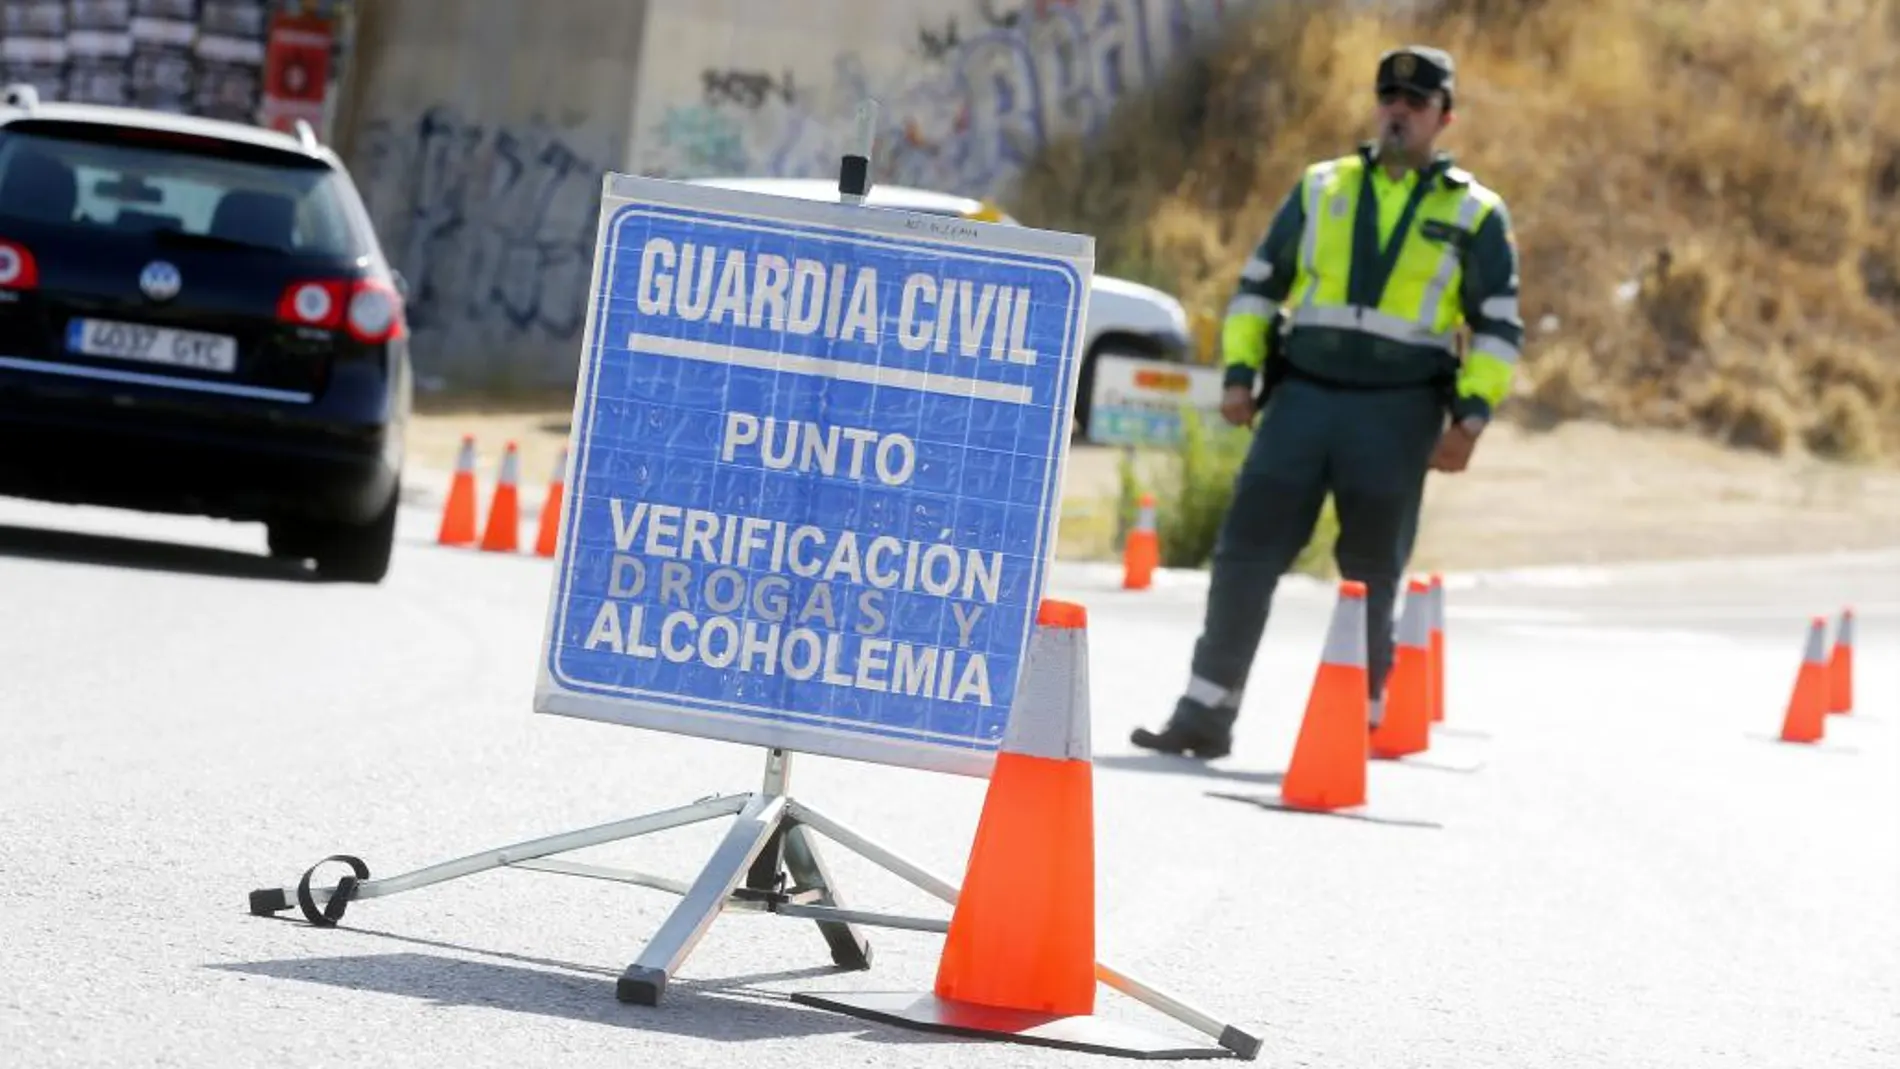 La campaña navideña de la DGT detecta 2.328 conductores al volante bajo efectos de alcohol o las drogas